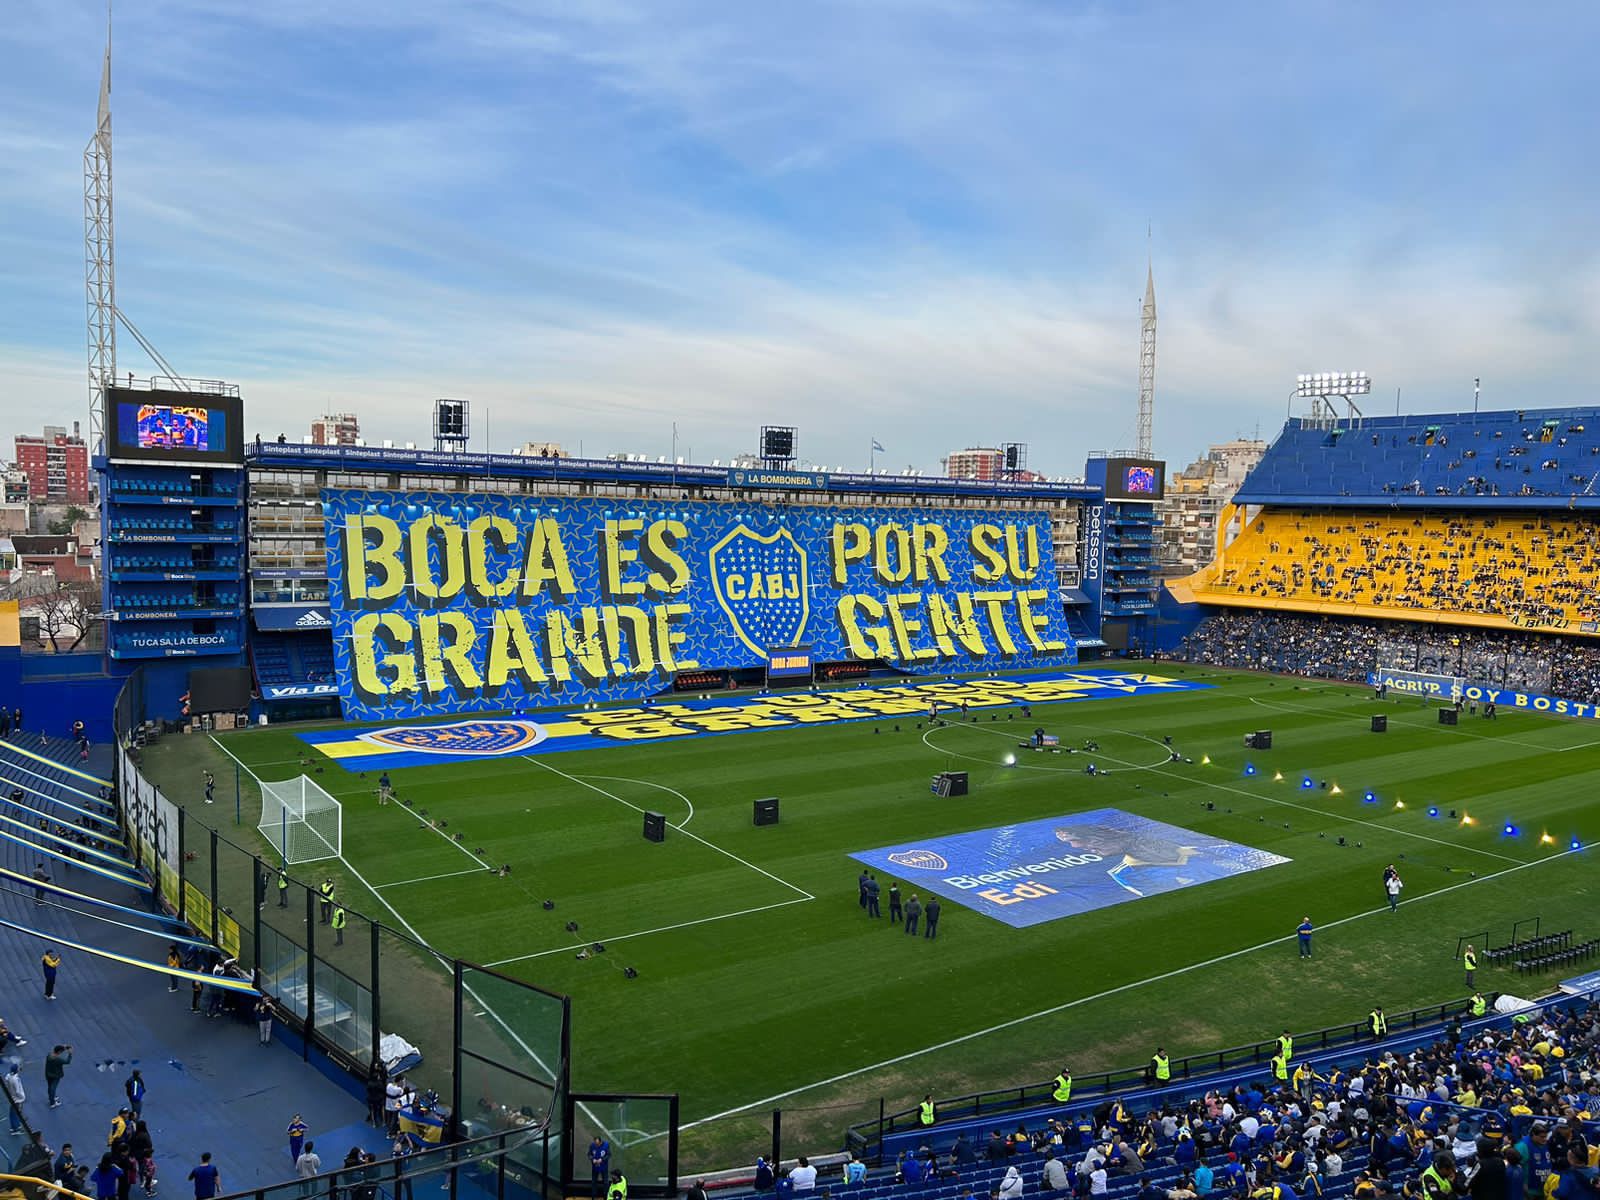 Con un telón y pancartas de bienvenida, así espera el estadio de Boca la llegada de Edinson Cavani (Foto: Planeta Boca Twitter)